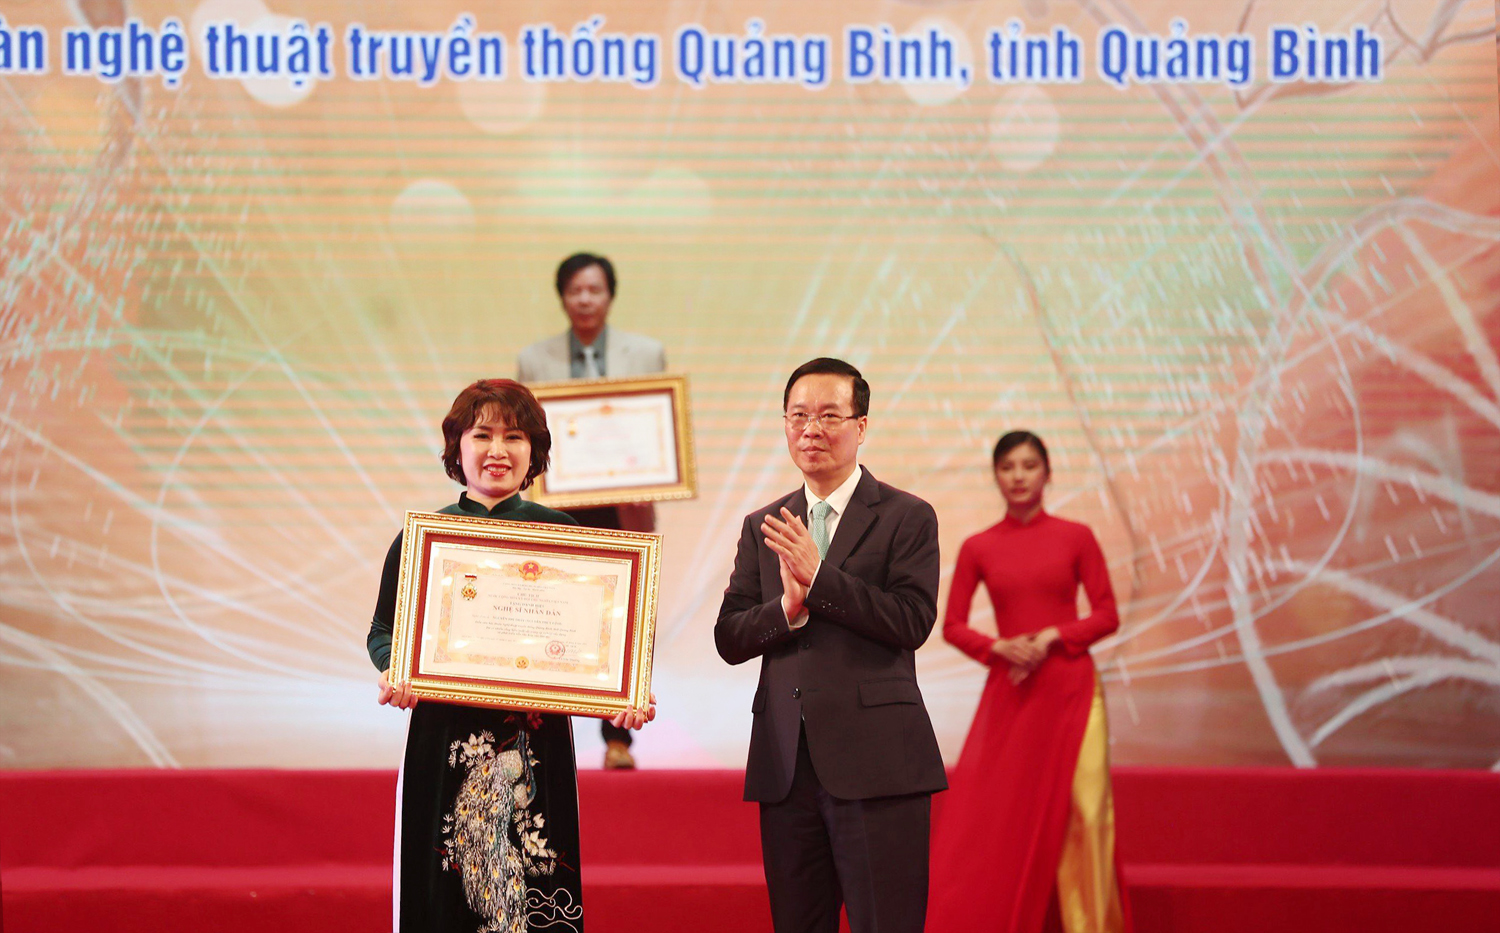 Ca sĩ Nguyễn Thùy Linh được phong tặng danh hiệu Nghệ sĩ Nhân dân